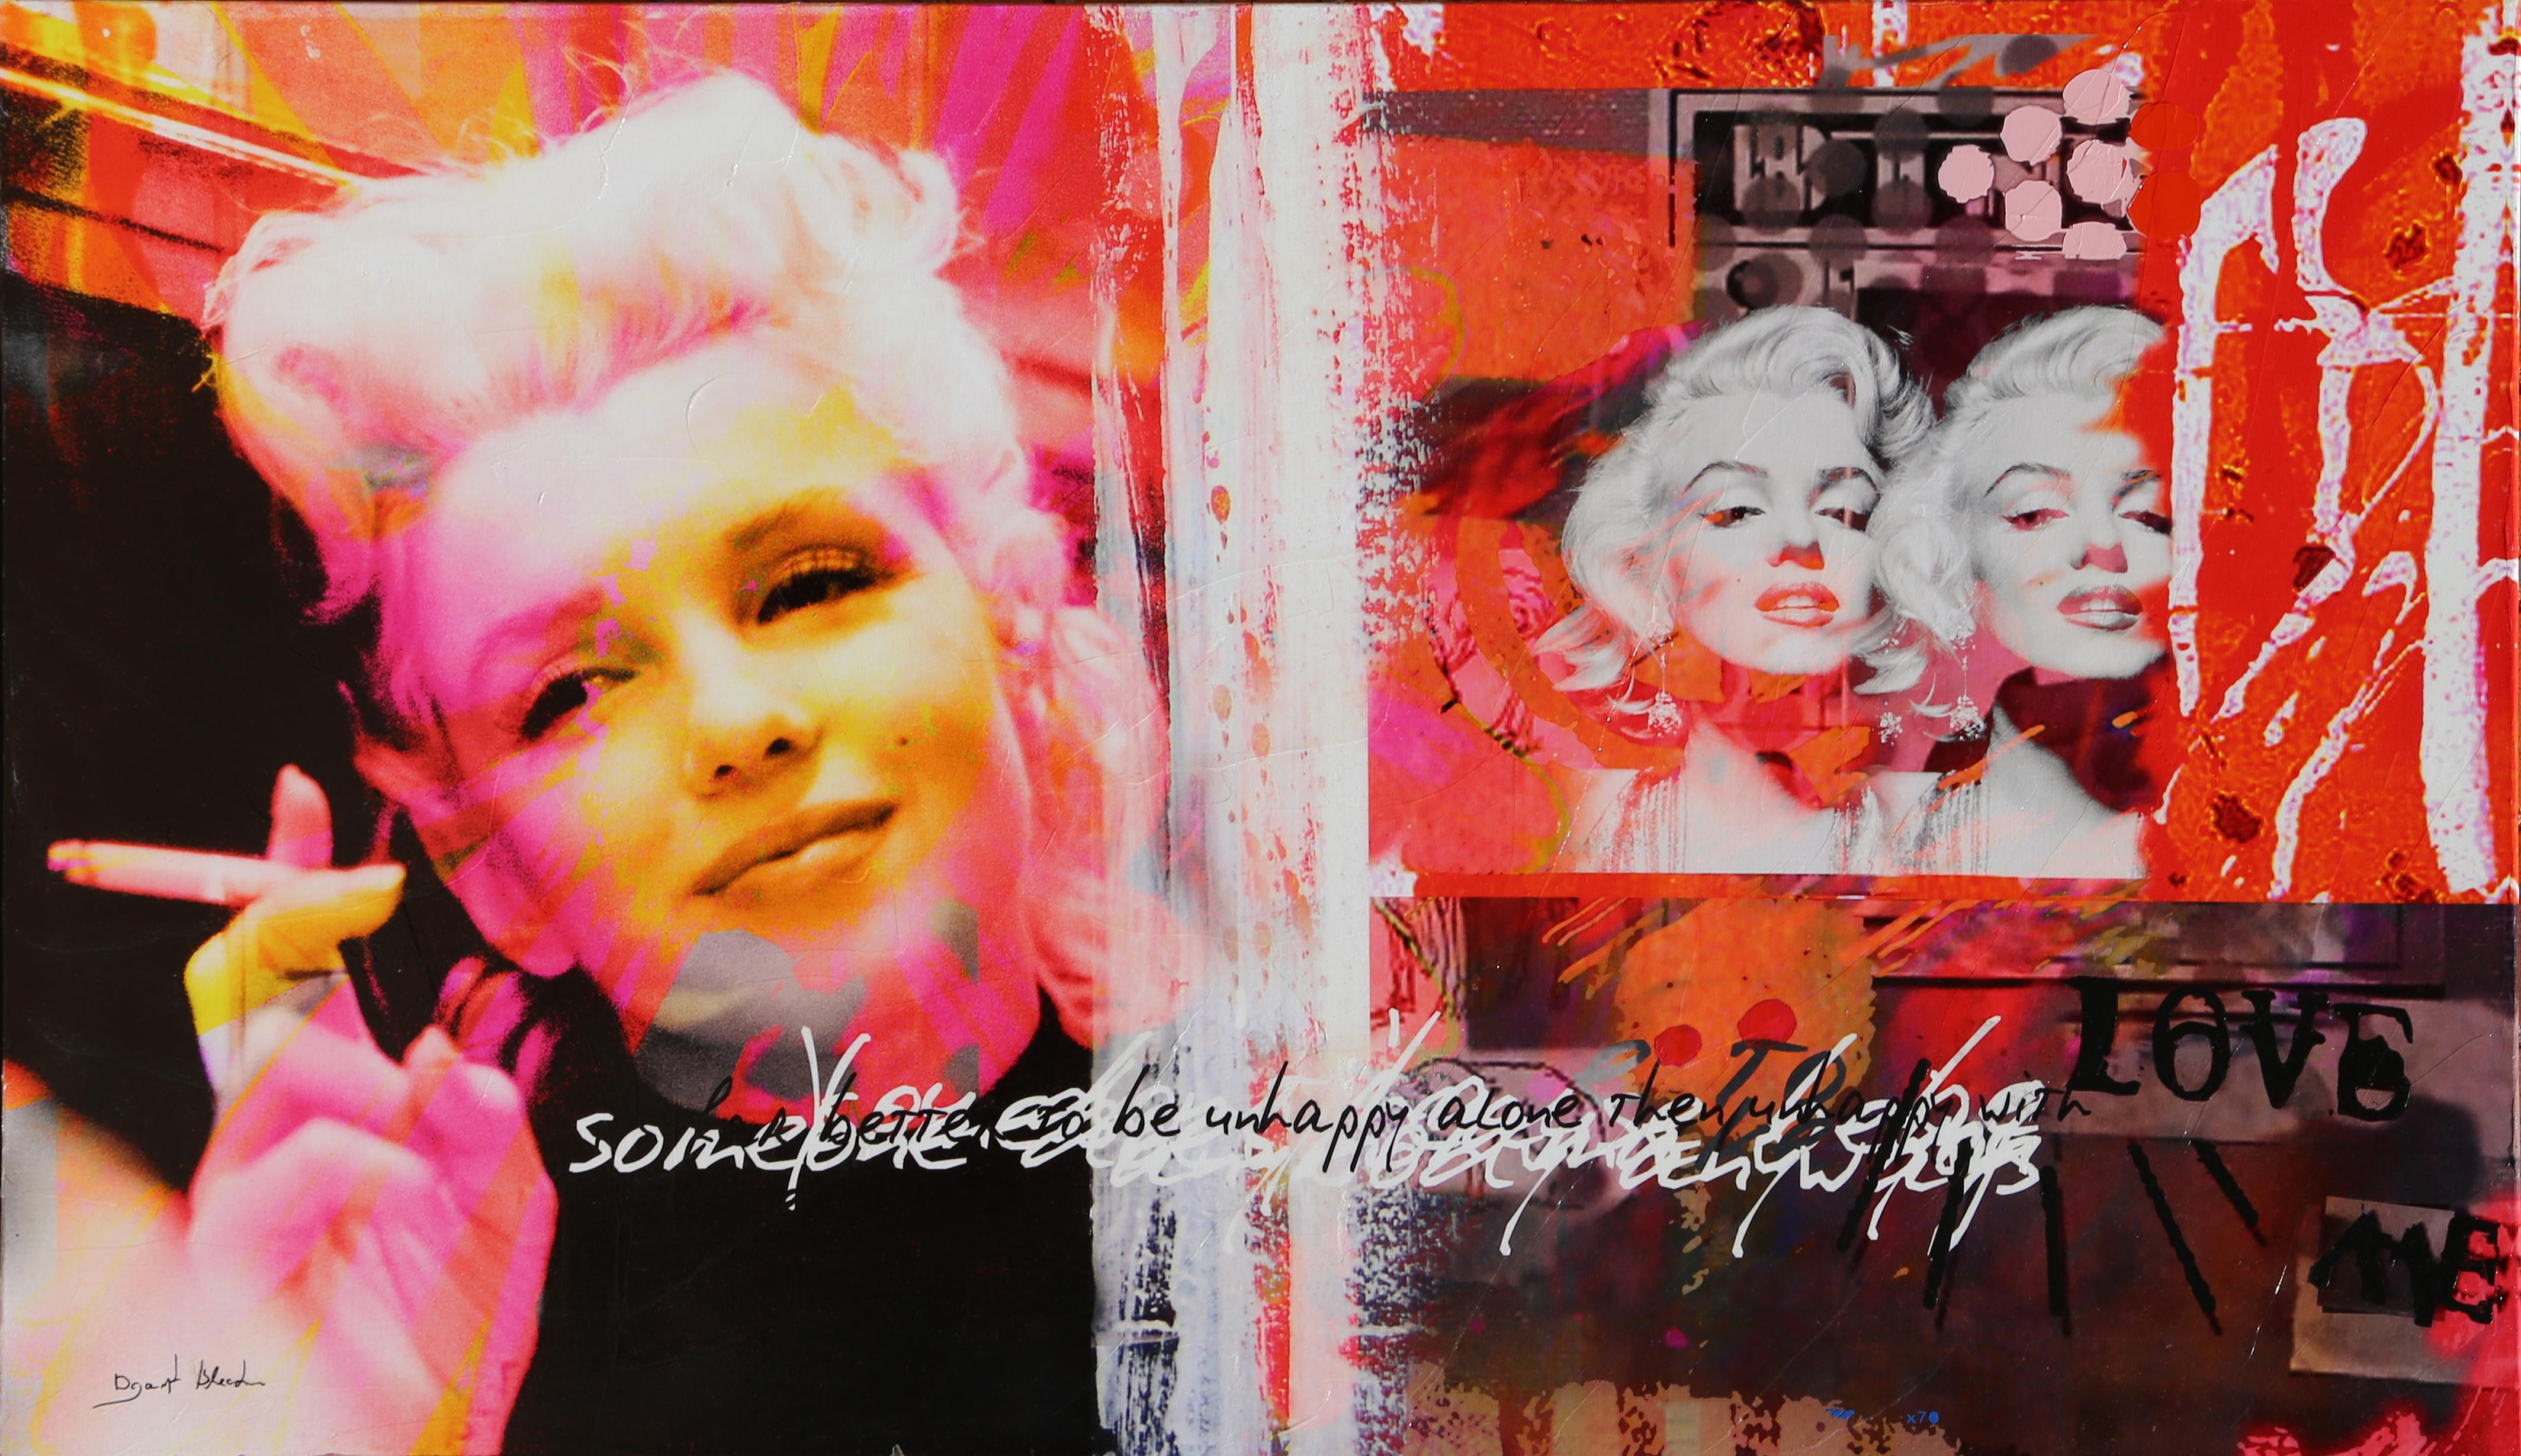 Künstler: Dganit Blechner, Israeli (1957 -  )
Titel: Marilyn Monroe
Medium: Siebdruck auf Leinwand, verso signiert und nummeriert mit Marker
Auflage: 2/8
Größe: 27,5 x 47 in. (69,85 x 119,38 cm)
